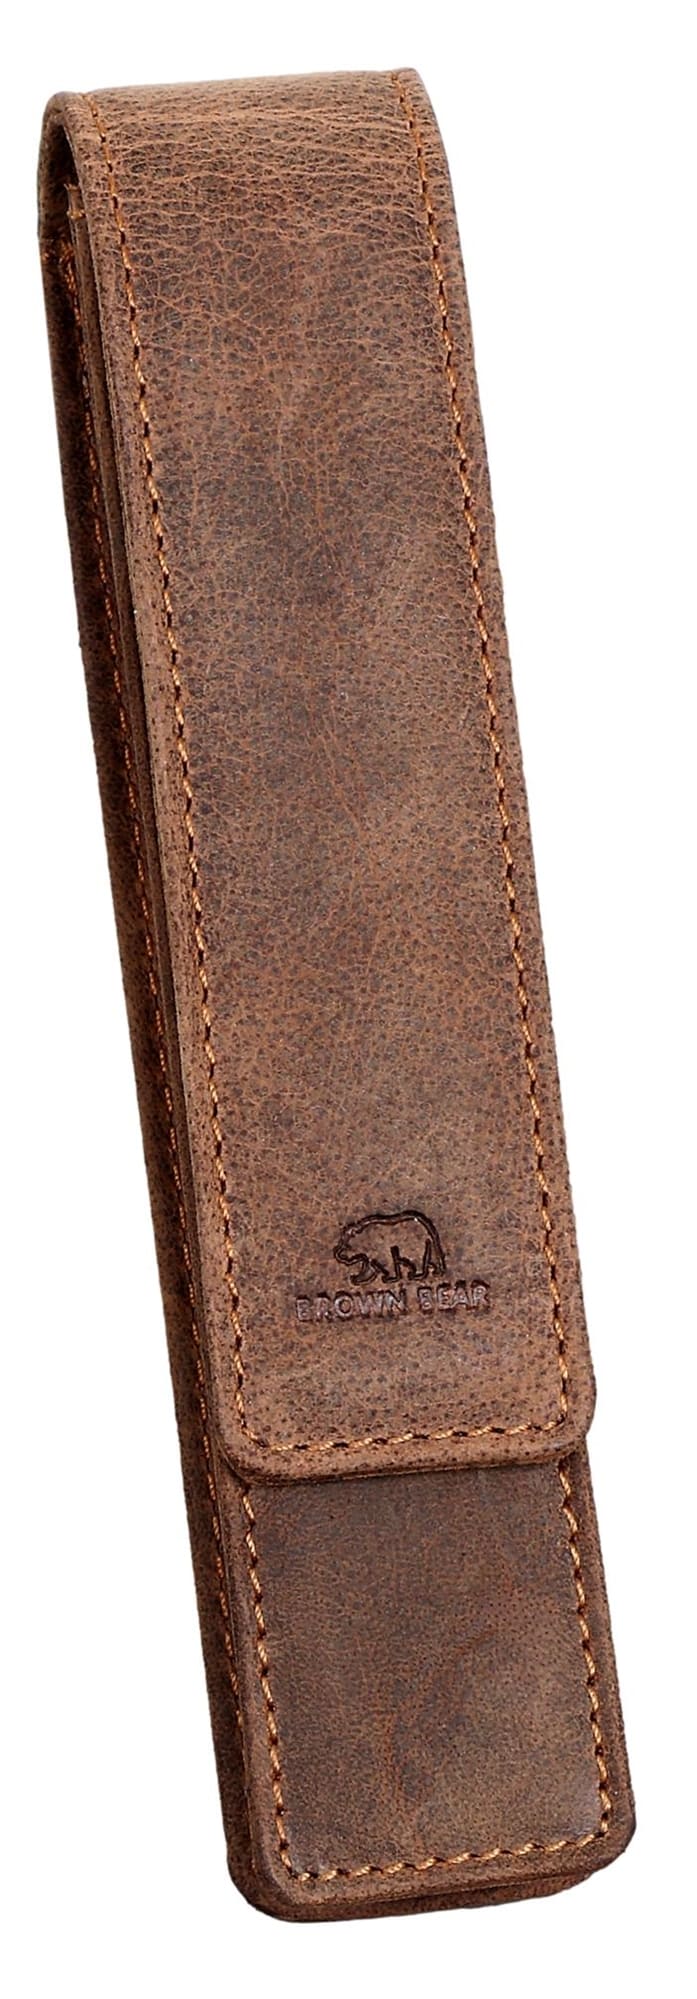 Brown Bear Golf 80 - Fülleretui für einen Stift Braun Vintage